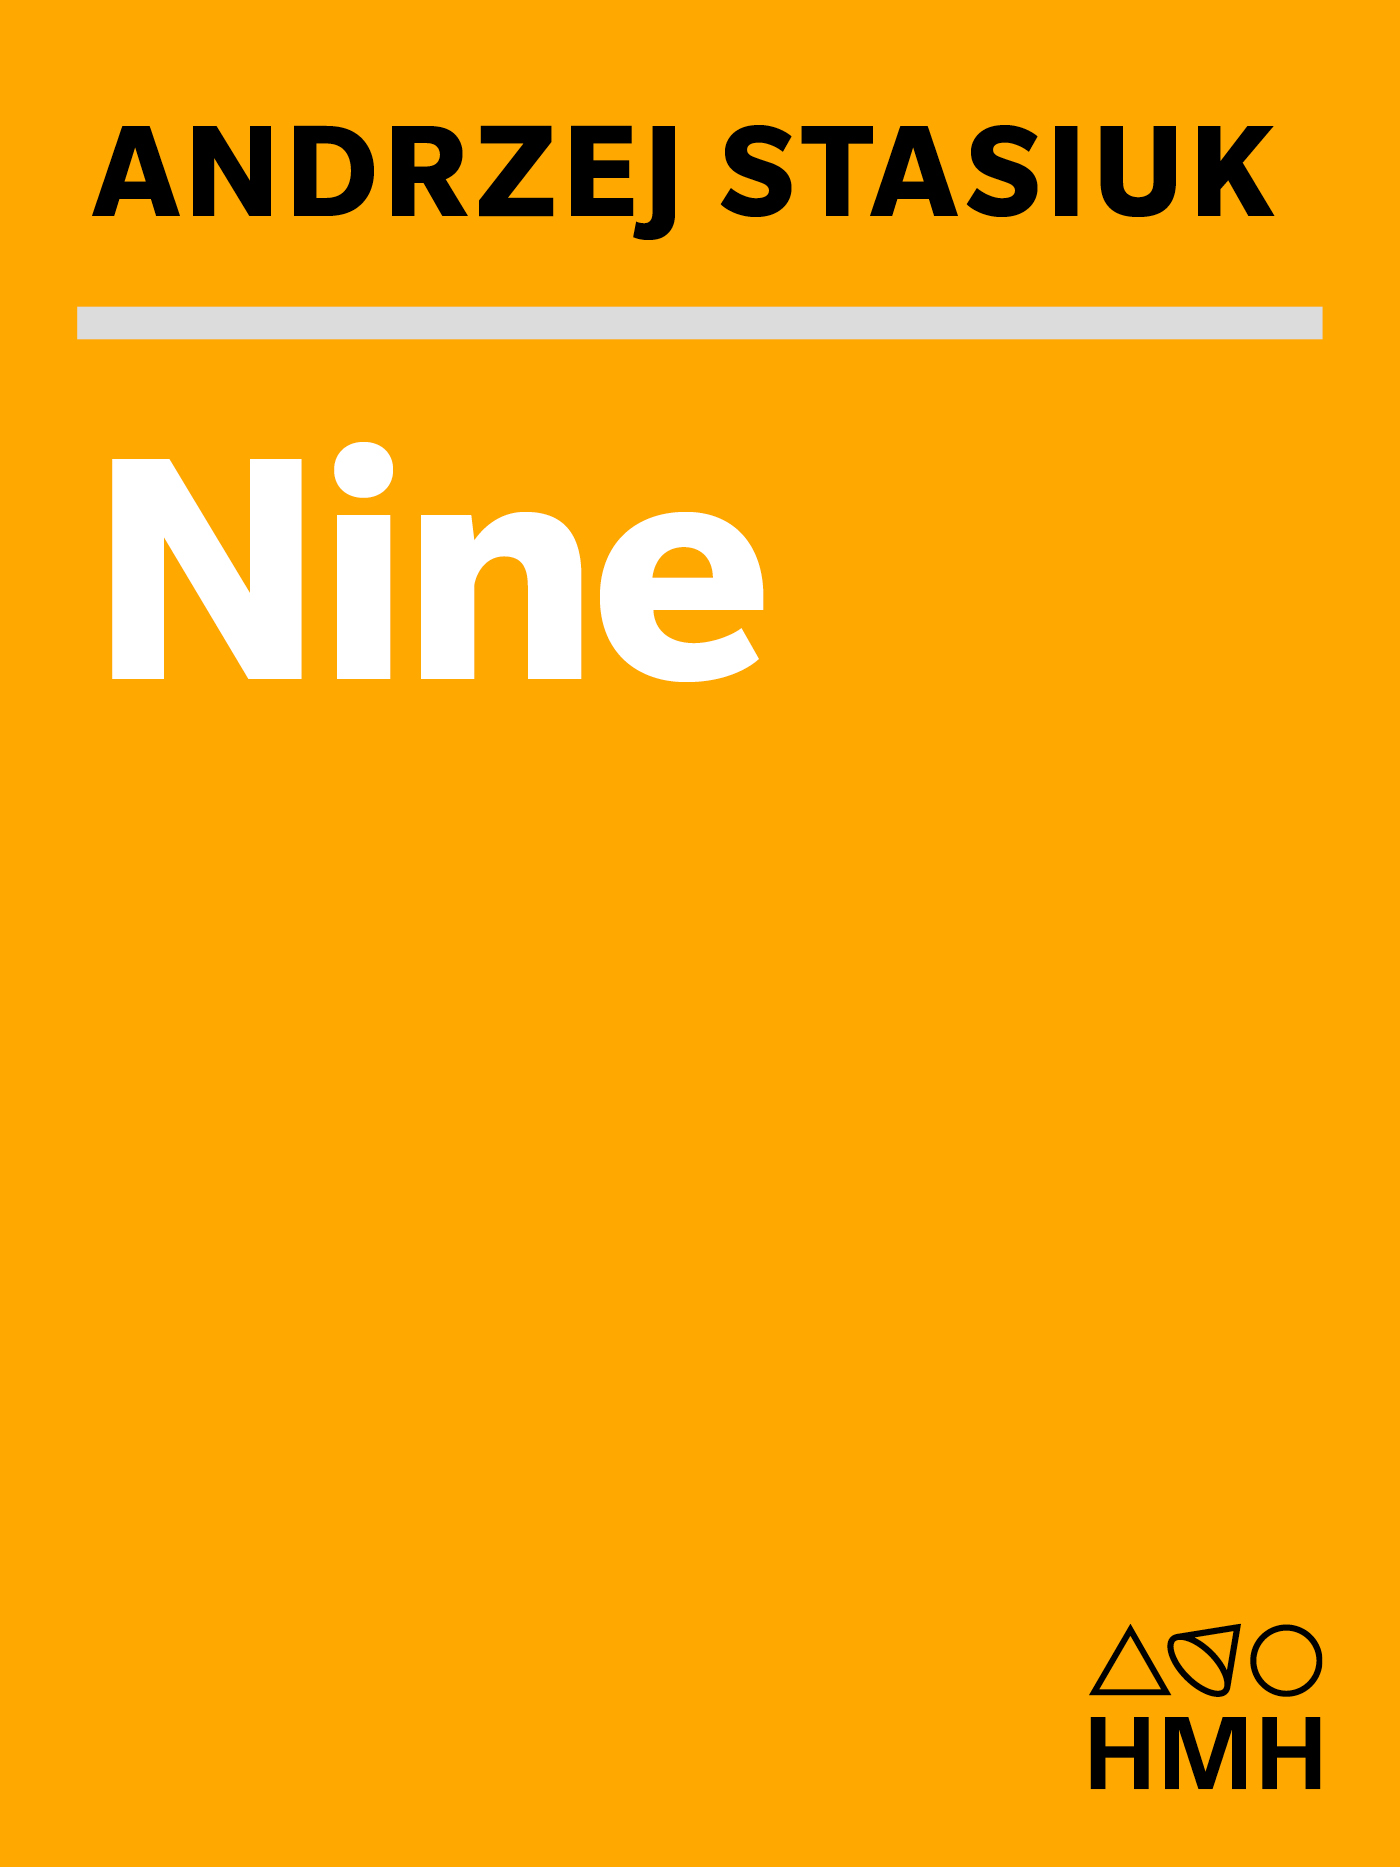 Nine by Andrzej Stasiuk